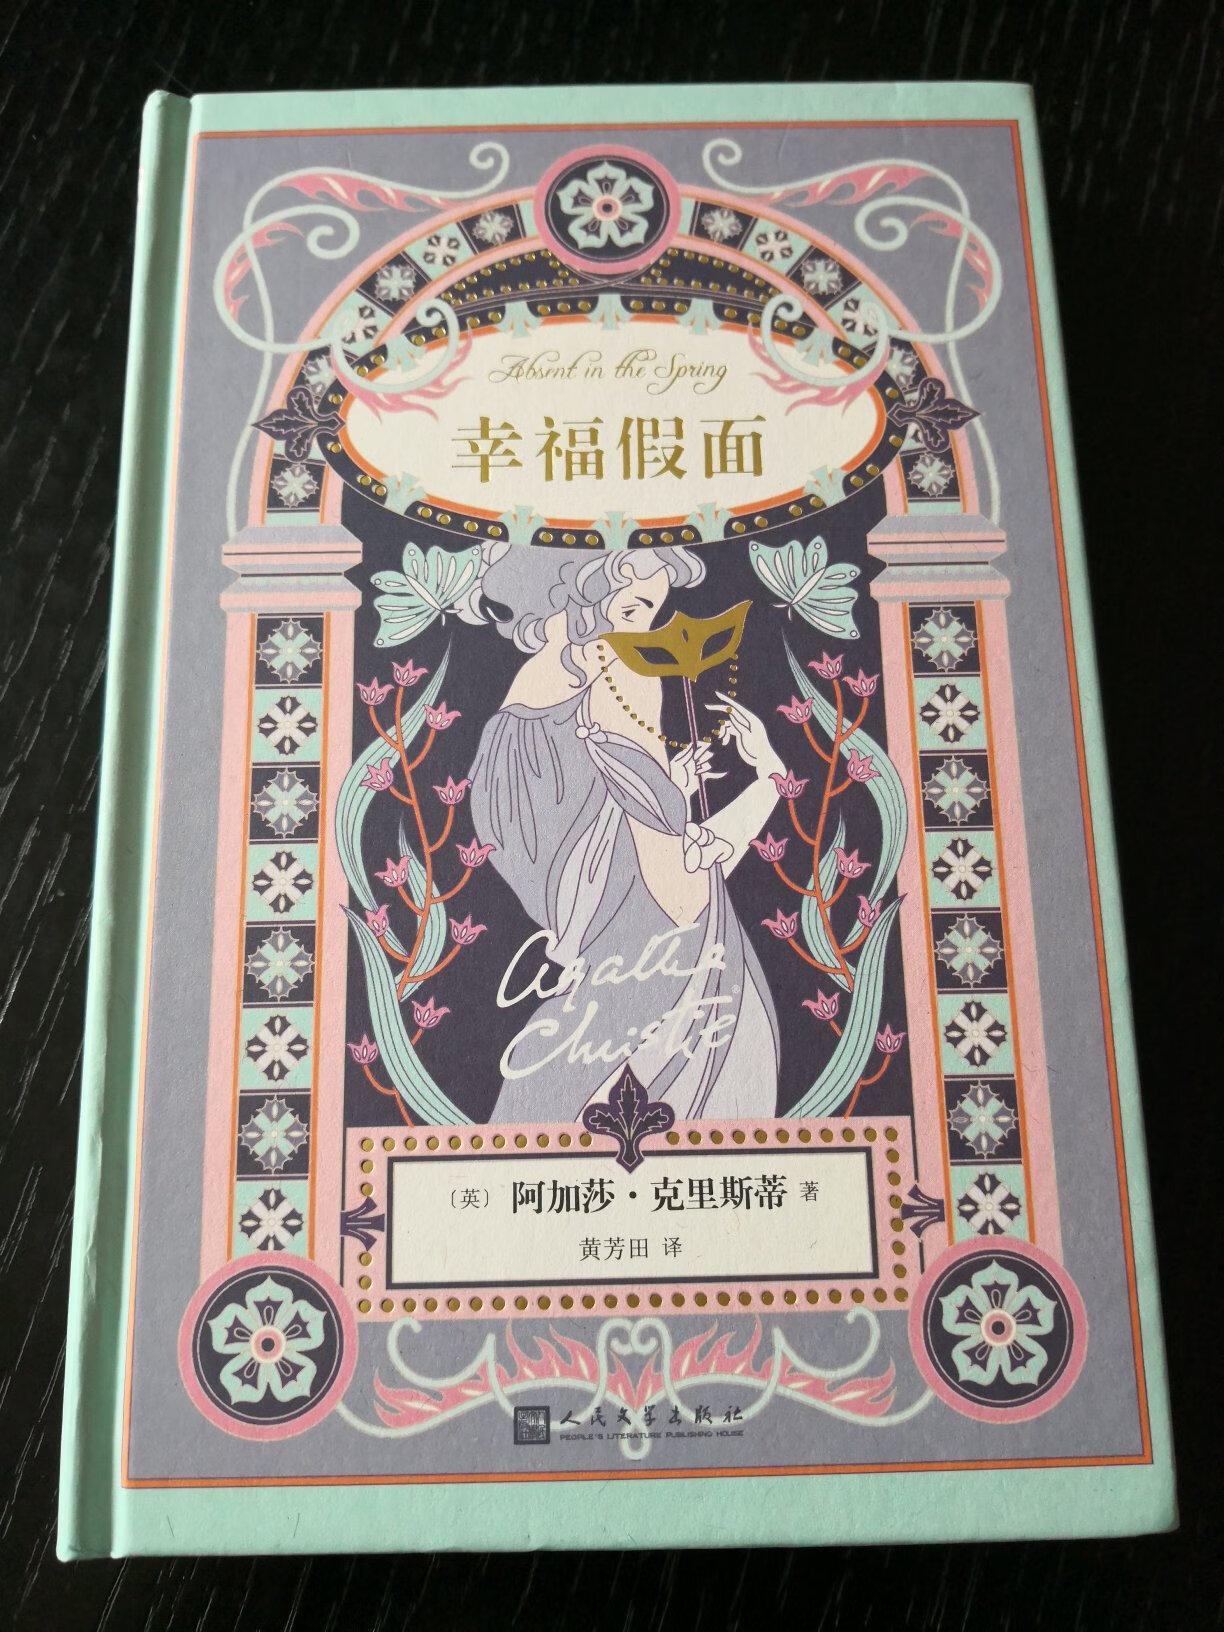 阿加莎克里斯蒂爱情小说系列，精装版比原来的平装版封面设计要好，原来的平装版有点太妖冶了。